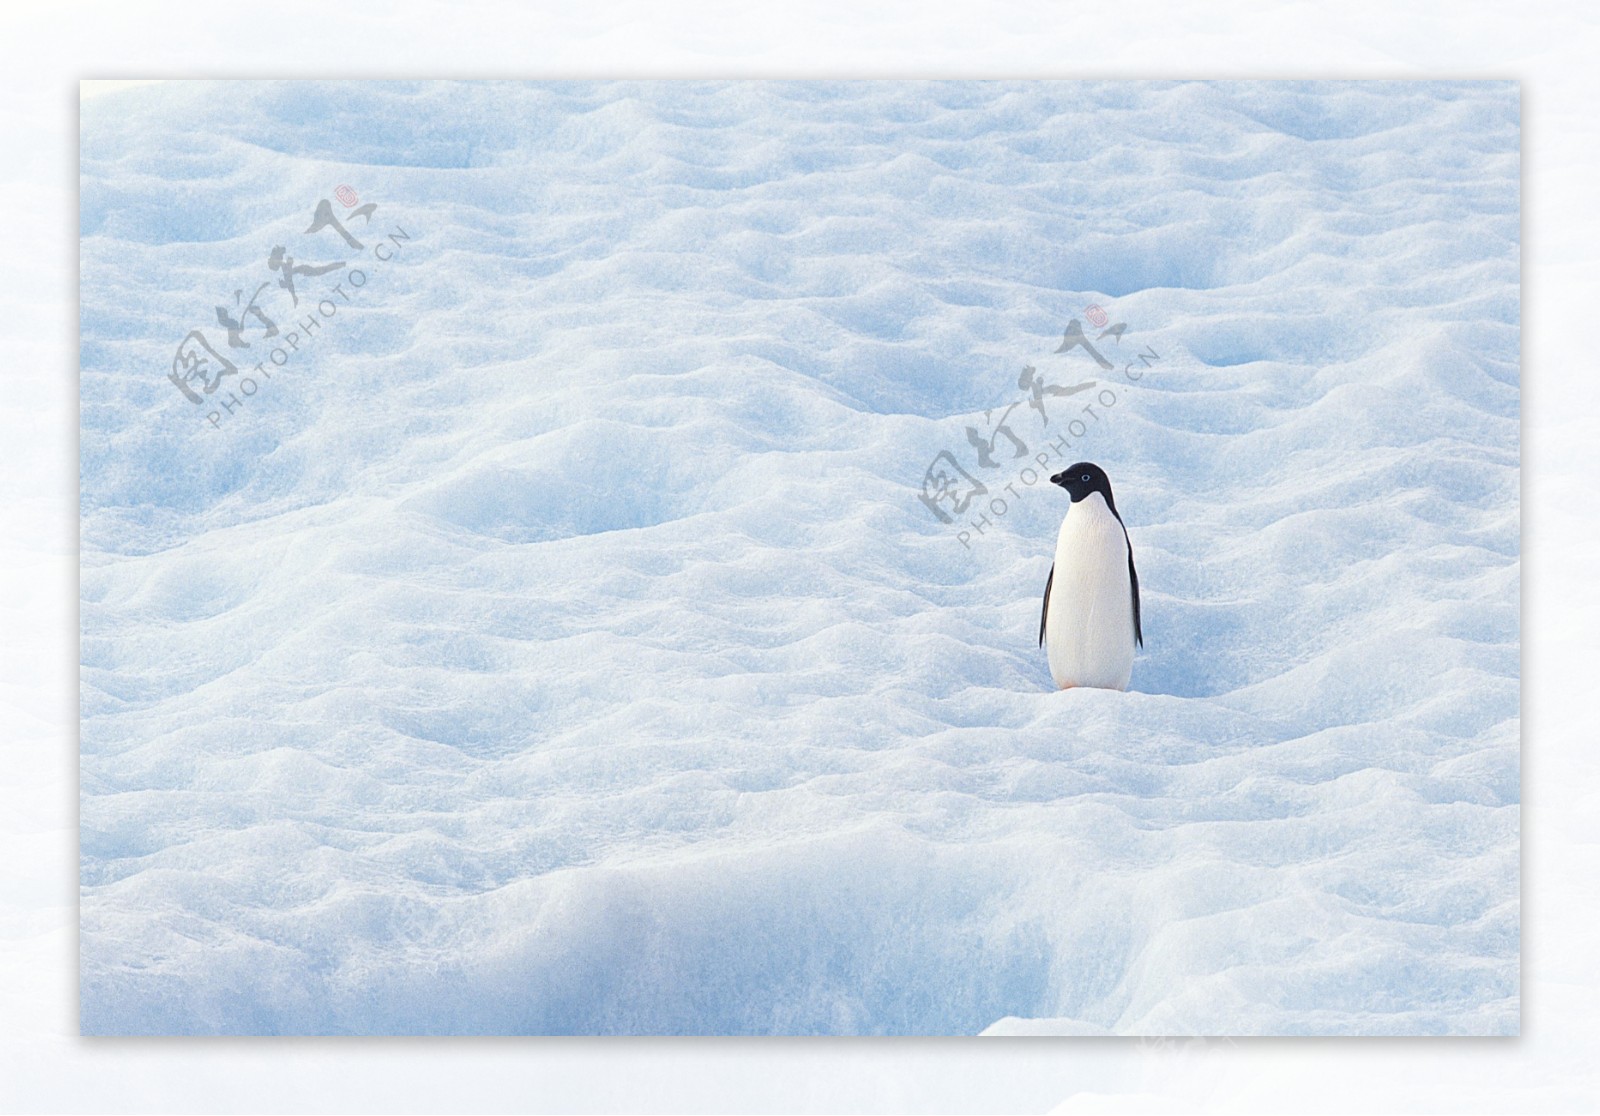 南极雪地企鹅图片